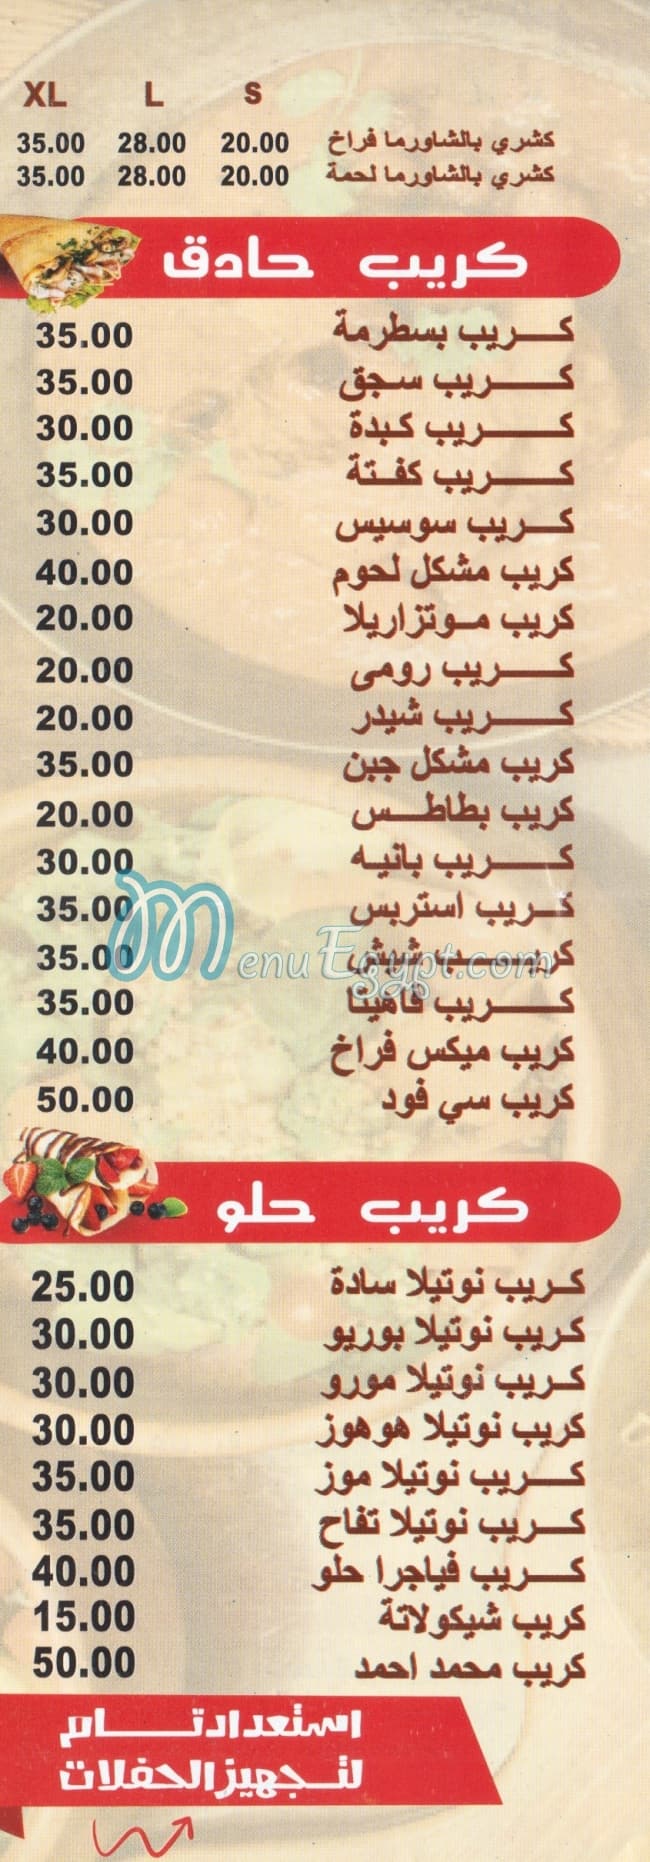 Mohamed Ahmed Alex online menu